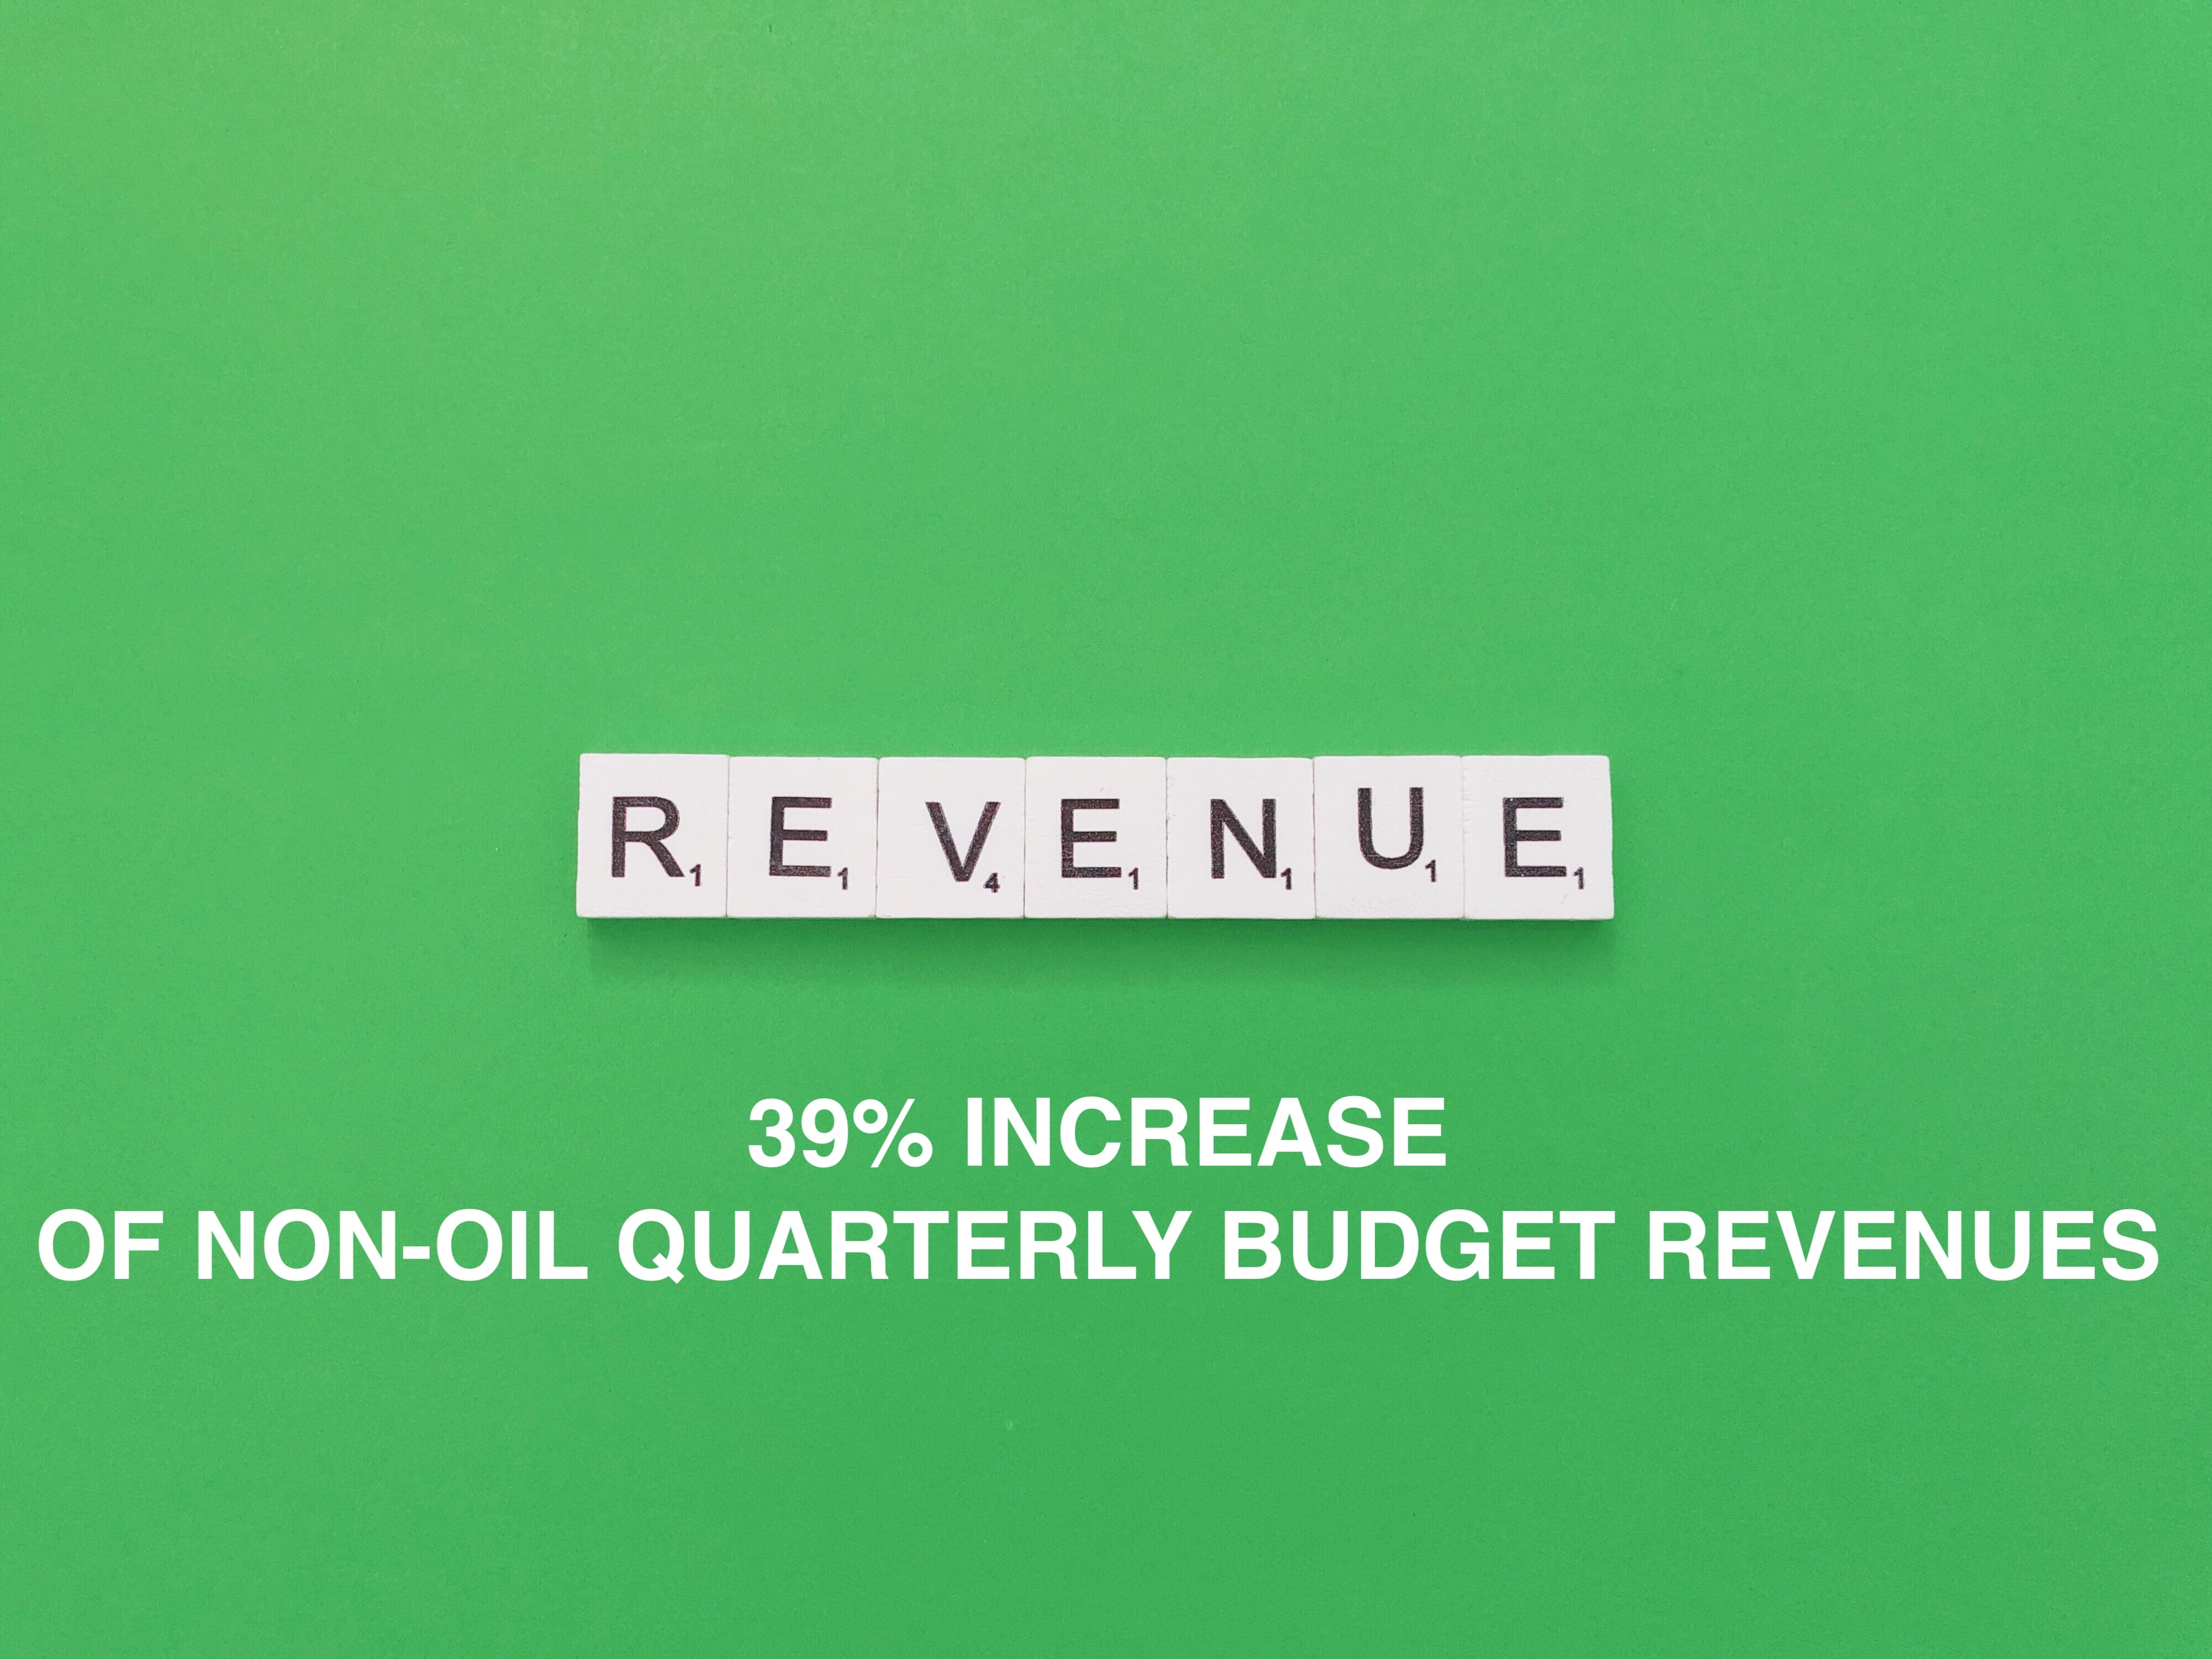 39% increase of non-oil quarterly budget revenues